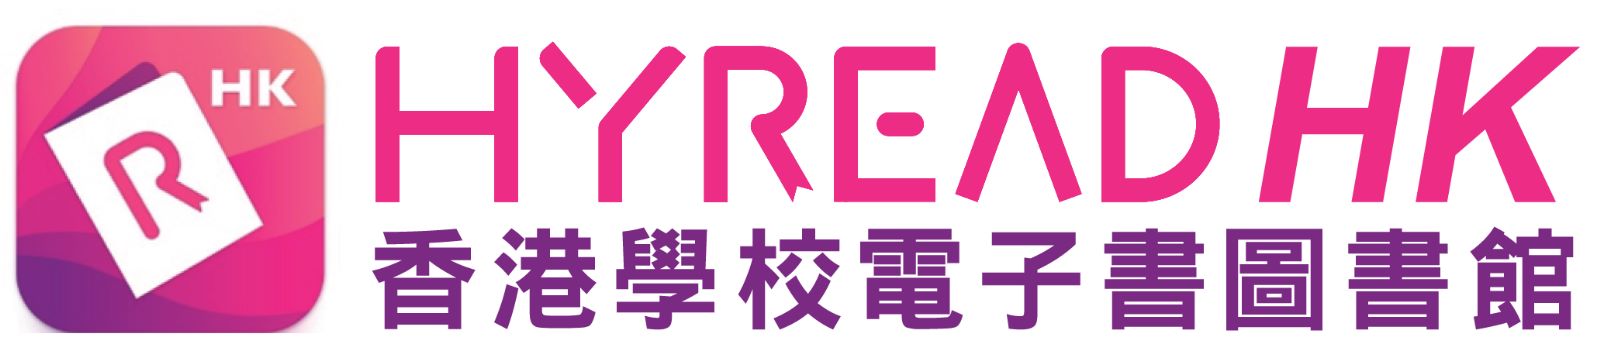 香港 Hyread 電子書網上購物平台